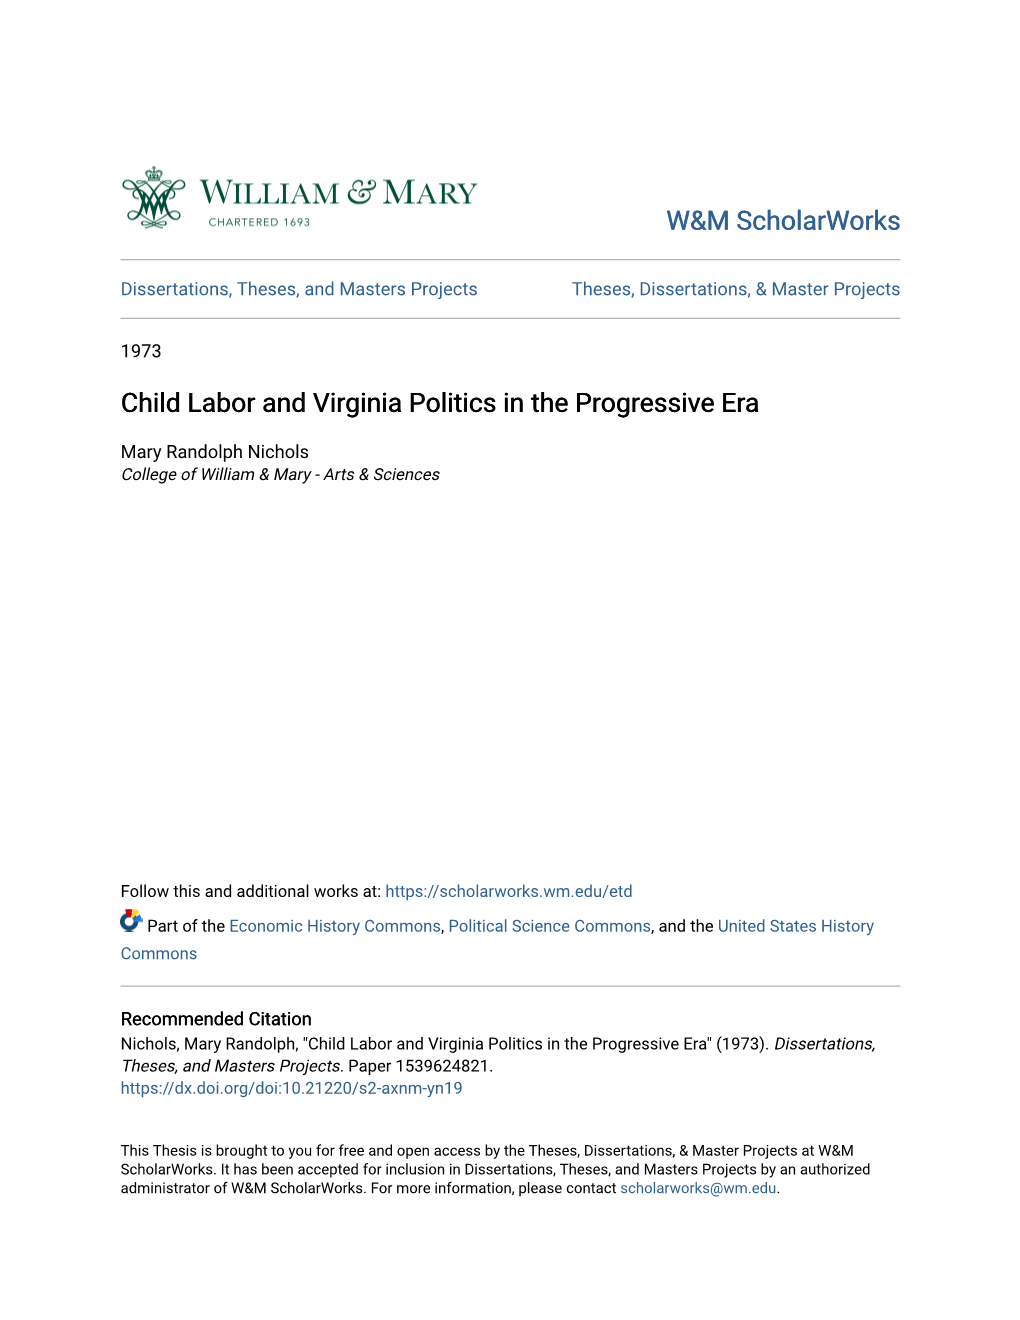 Child Labor and Virginia Politics in the Progressive Era